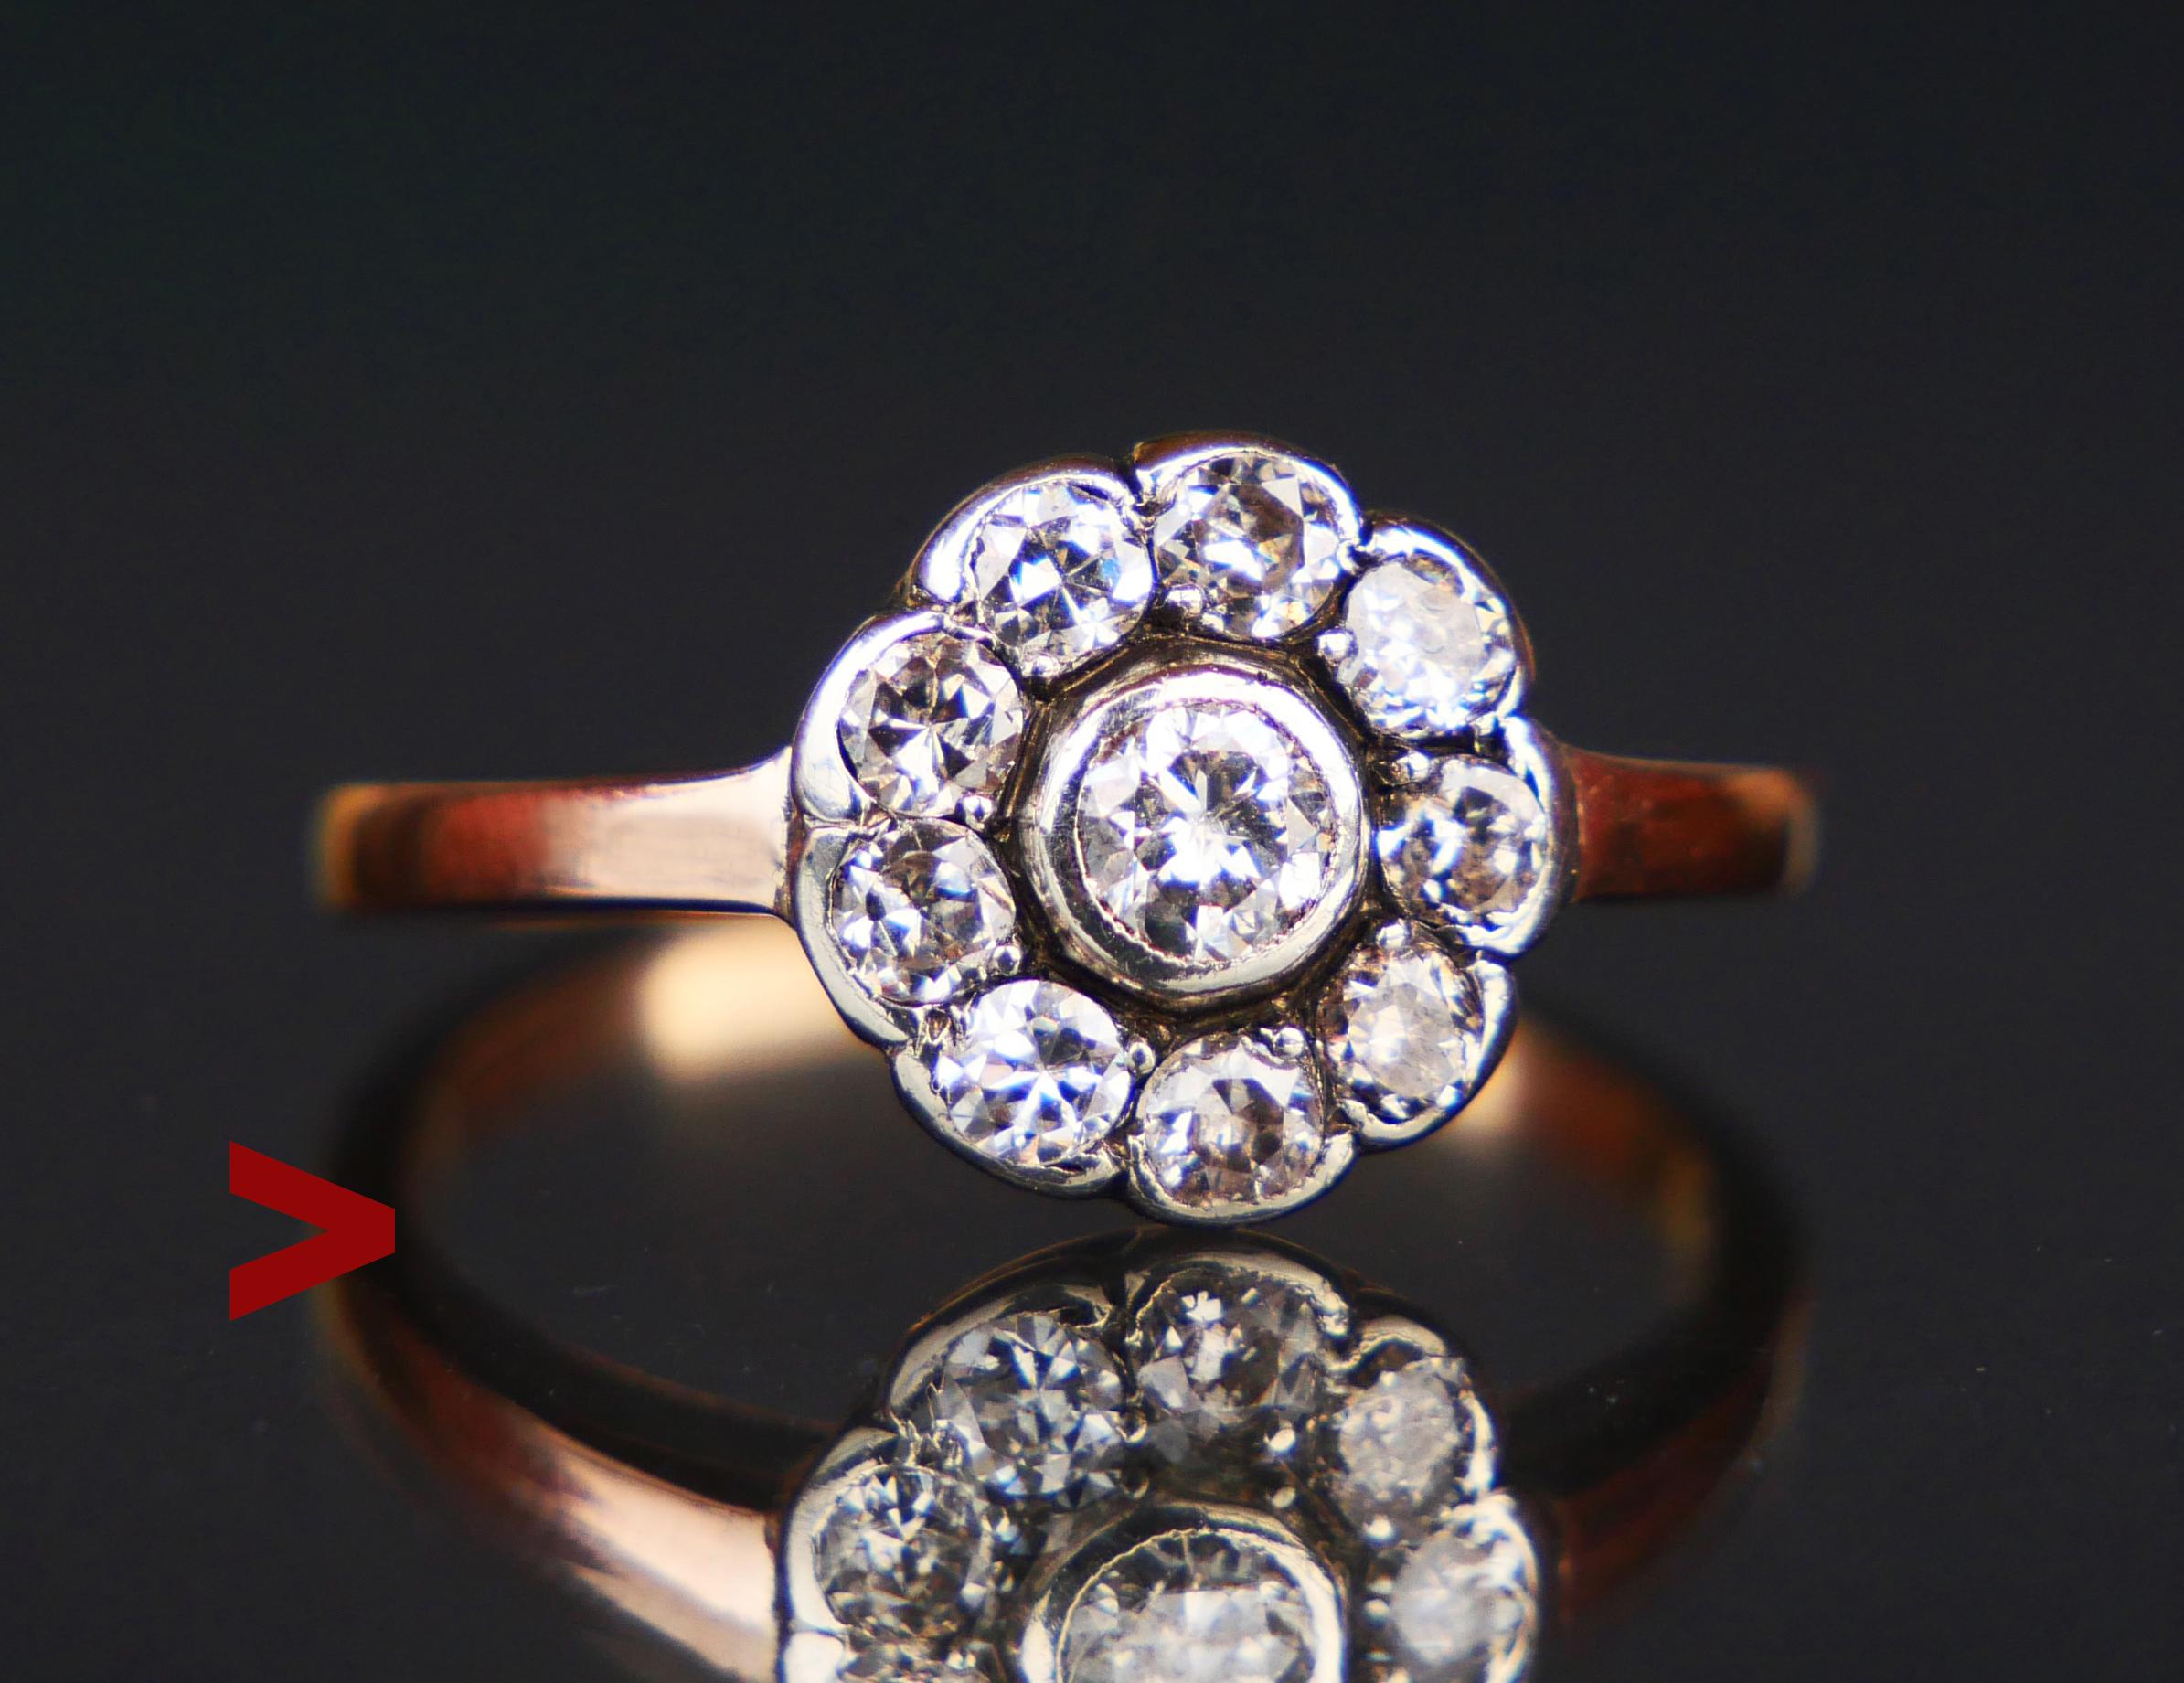 Antiker Halo-Ring mit Diamanten, ca. 1920er-1930er Jahre, wahrscheinlich deutsch oder dänisch.  Keine Punzierungen, Band getestet massiv 14K Rose Gold.

Krone mit Aufsatz aus Weißgold oder Silber mit 11 alten Diamanten im Brillantschliff, der